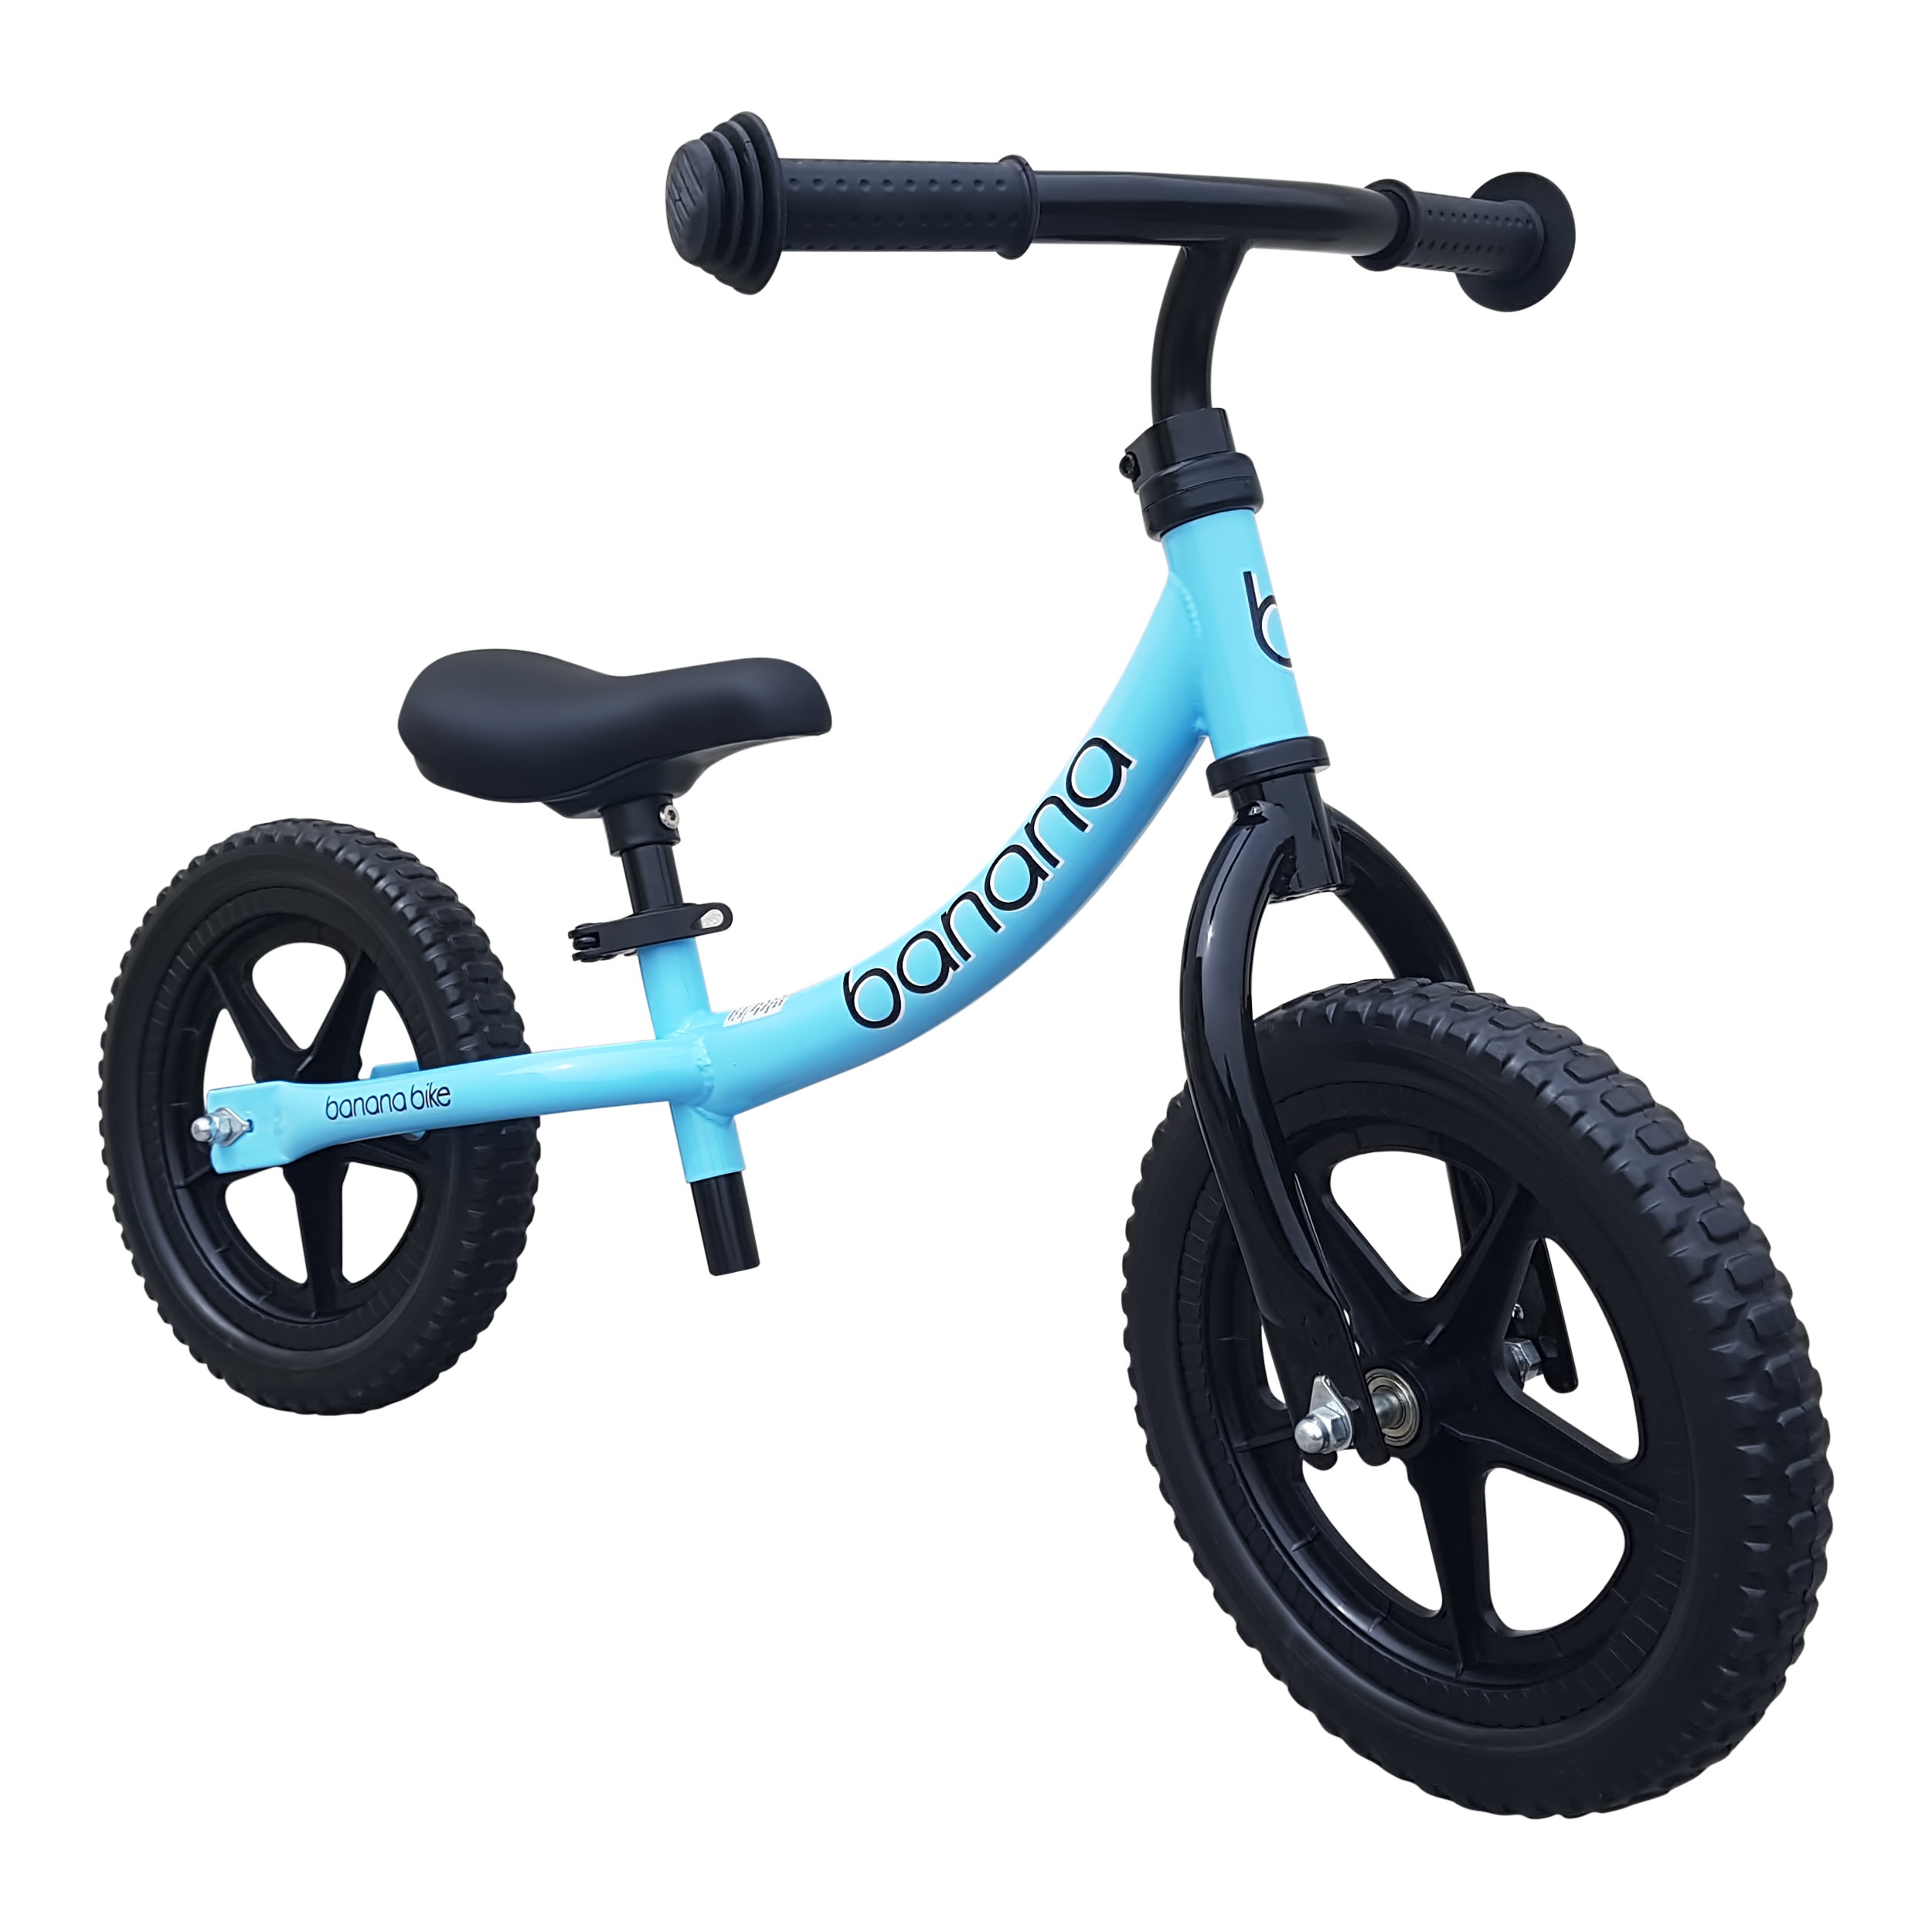 Banana Bike LT – Lightweight Balance Bike for Toddlers